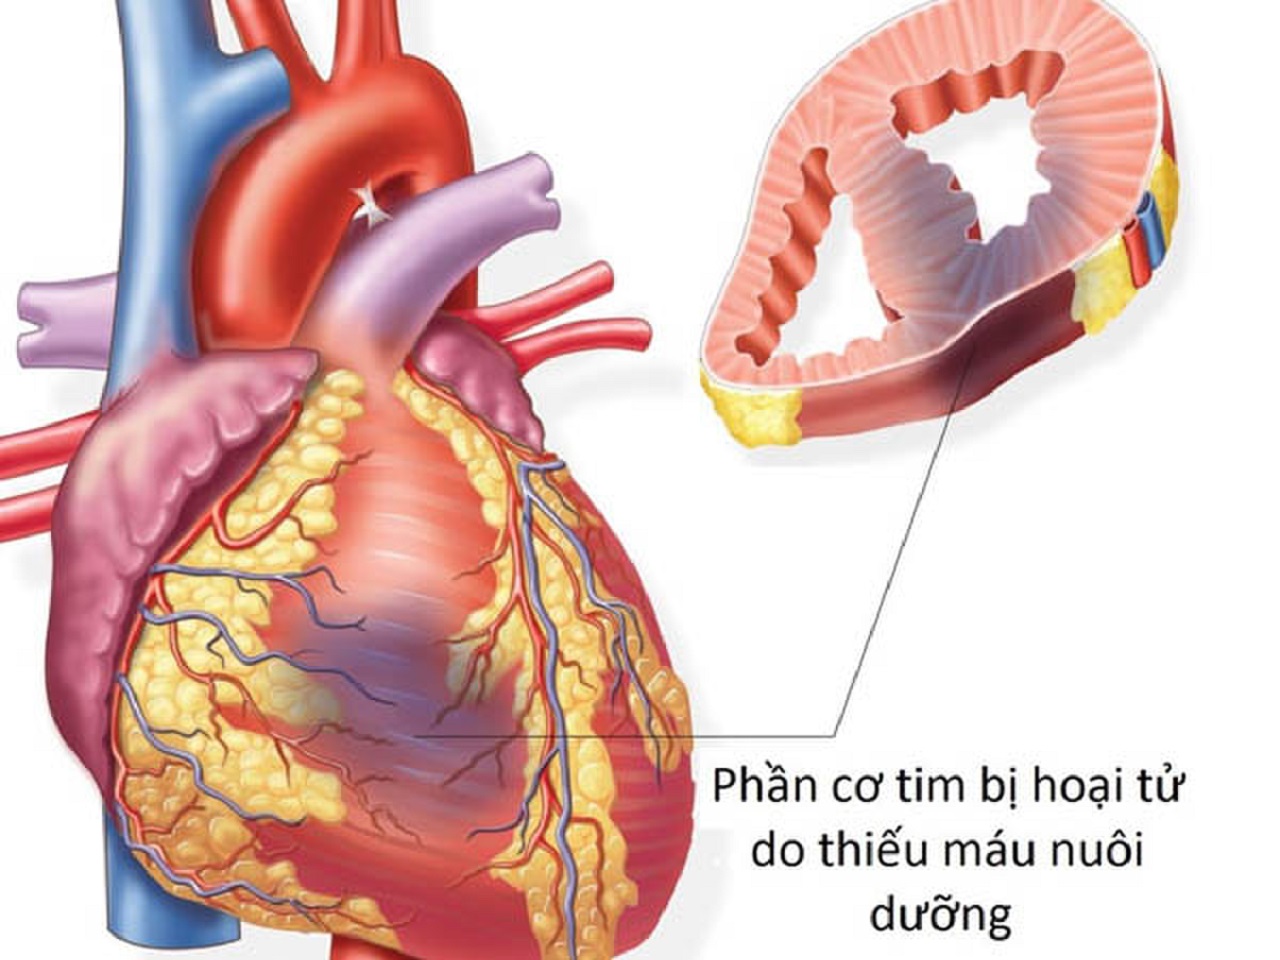 Nhồi máu cơ tim thành dưới: Chẩn đoán và điều trị | TCI Hospital